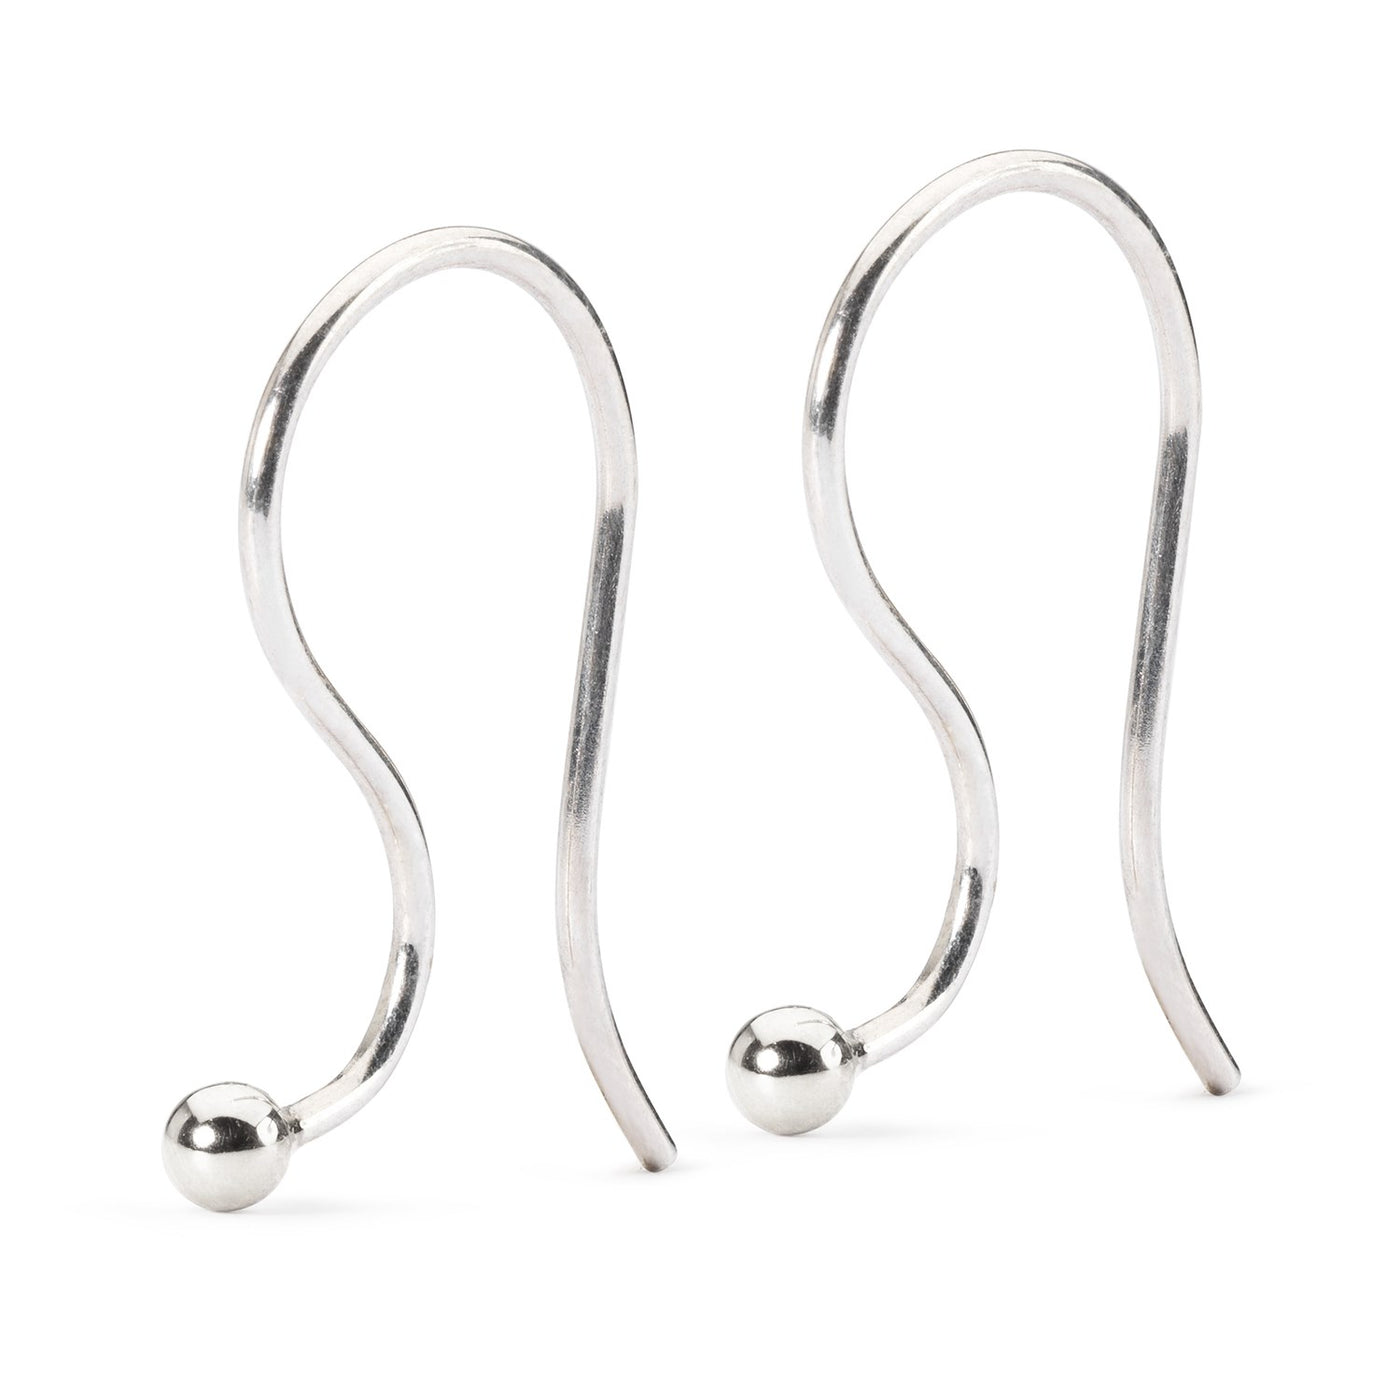 Jewelry Finding Accessories | Earring Hooks | Jewelry Findings Components - Ear  Earring - Aliexpress